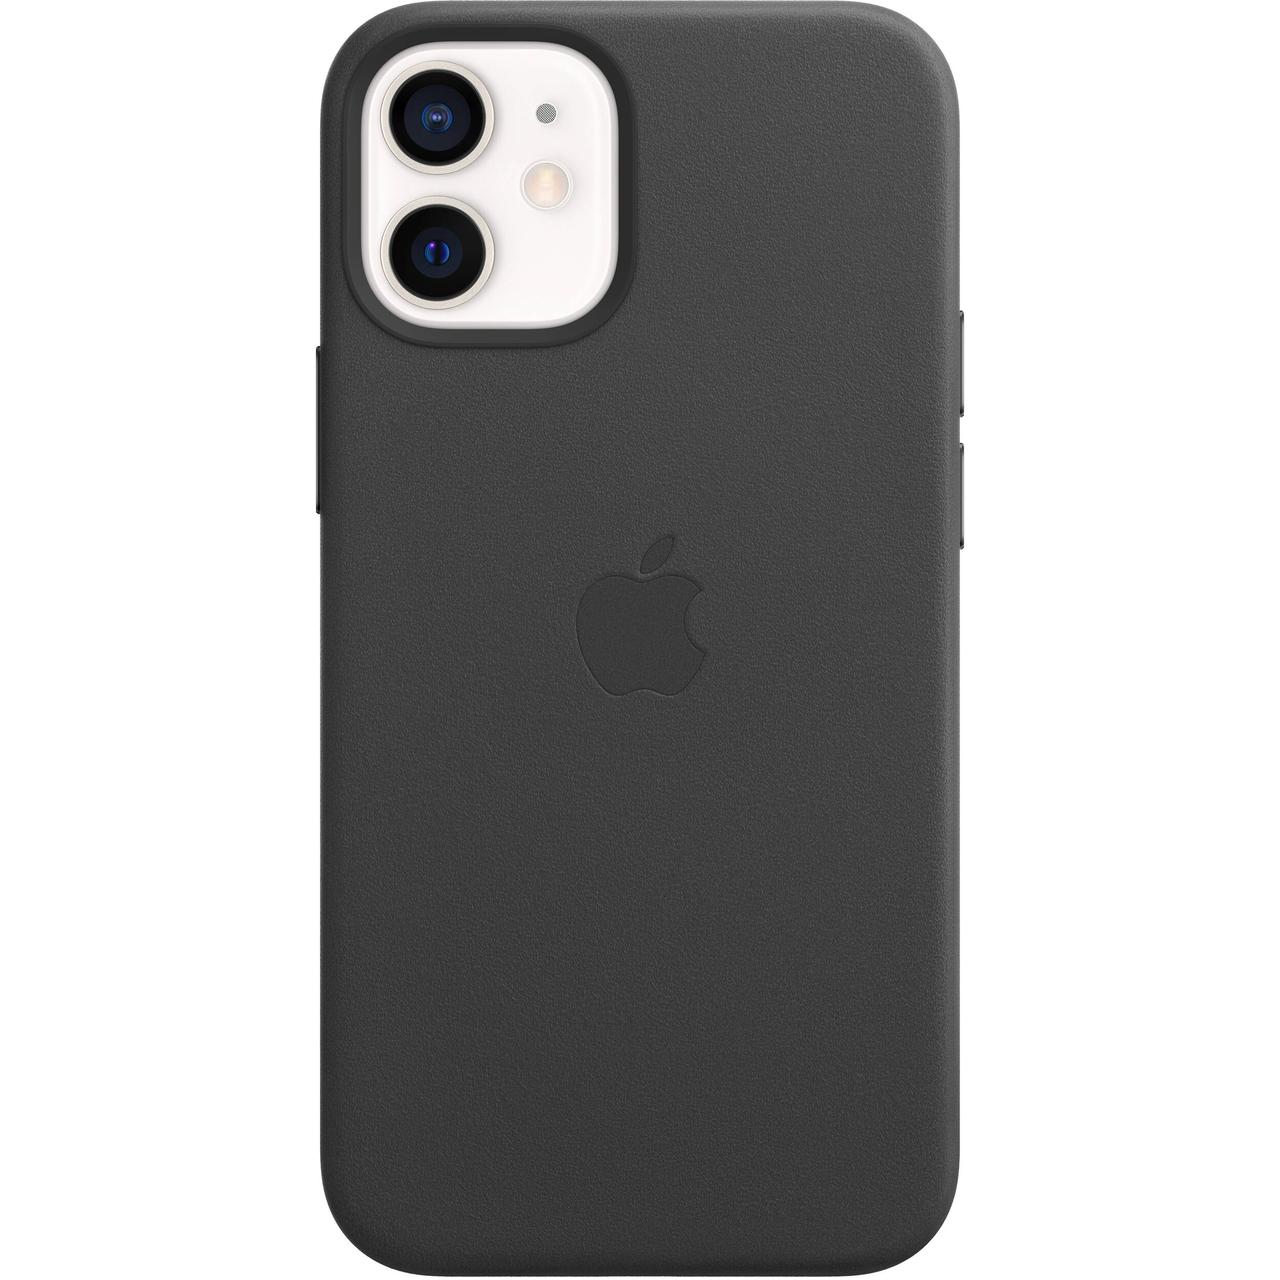 Оригинальный кожаный чехол для Apple IPhone 12 mini с MagSafe - Black, фото 1